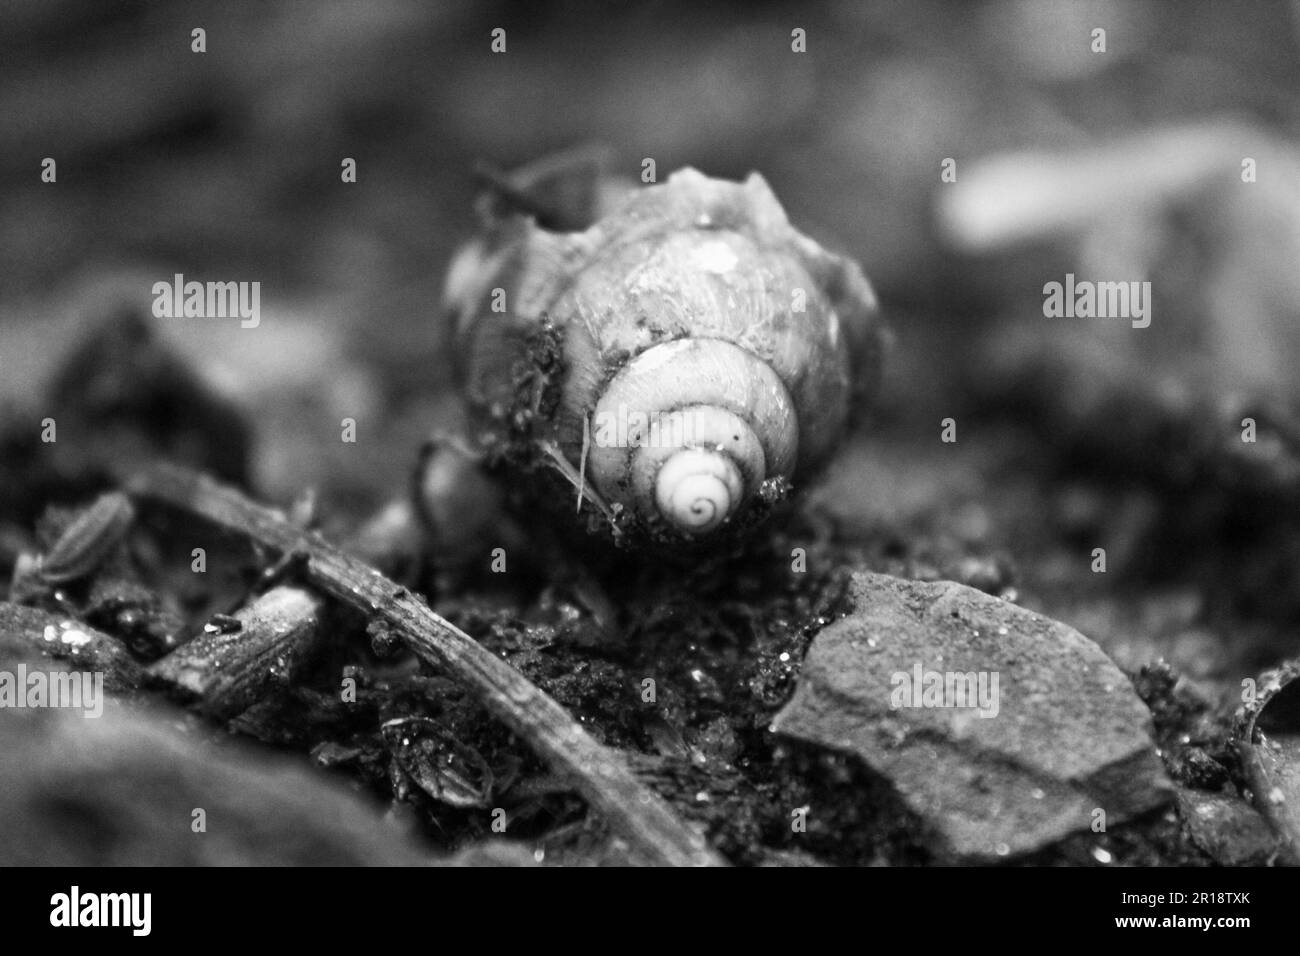 Macro Photographie d'une coquille d'escargot - Noir et blanc Banque D'Images